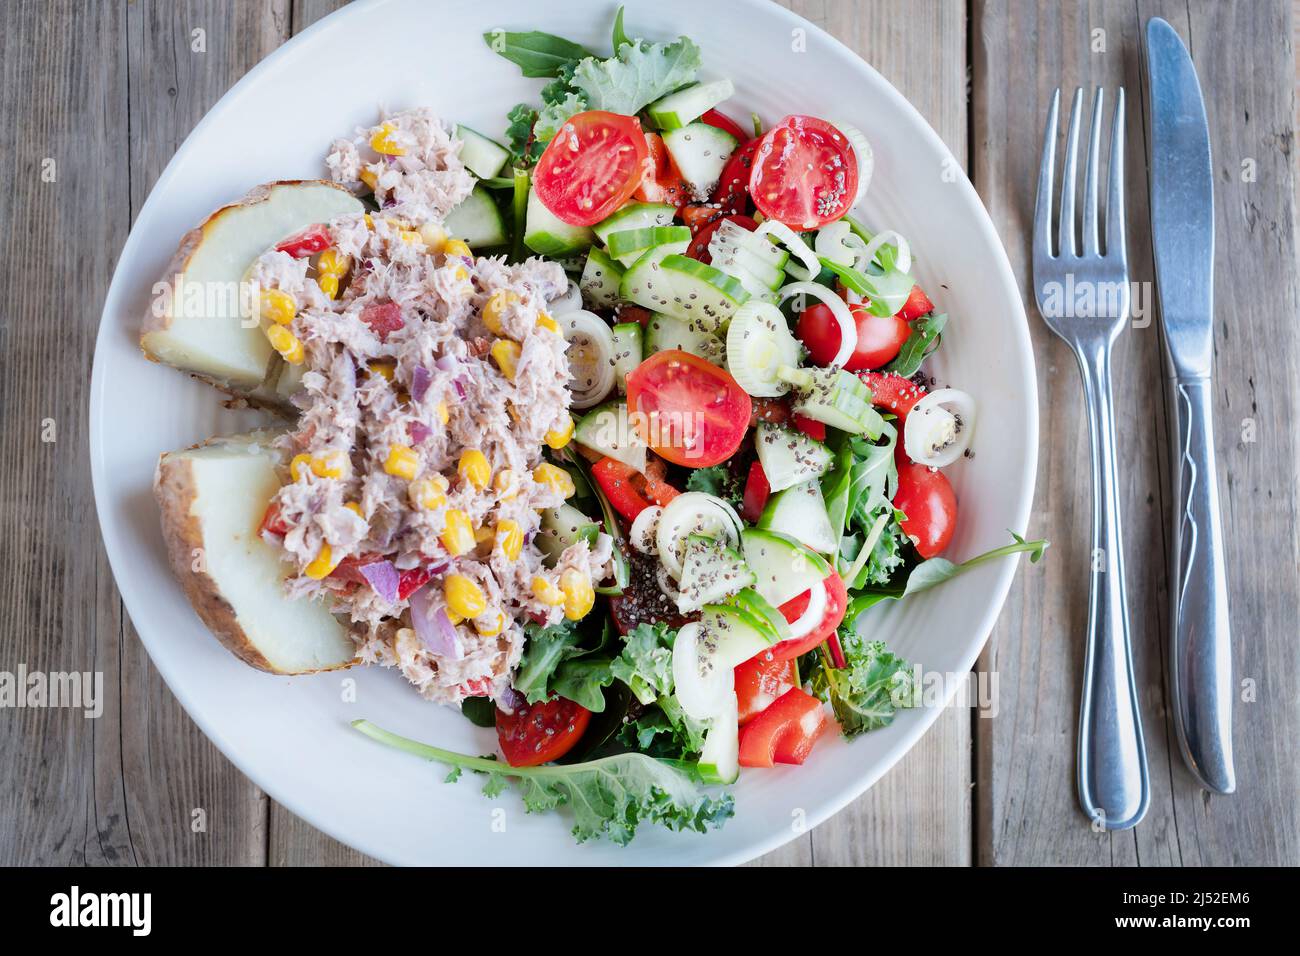 Le Tun, le maïs sucré et la mayonnaise sont servis sur une demi-pomme de terre avec une salade de légumes verts, de tomates, de concombres et d'oignons. Un aliment de base méditerranéen Banque D'Images